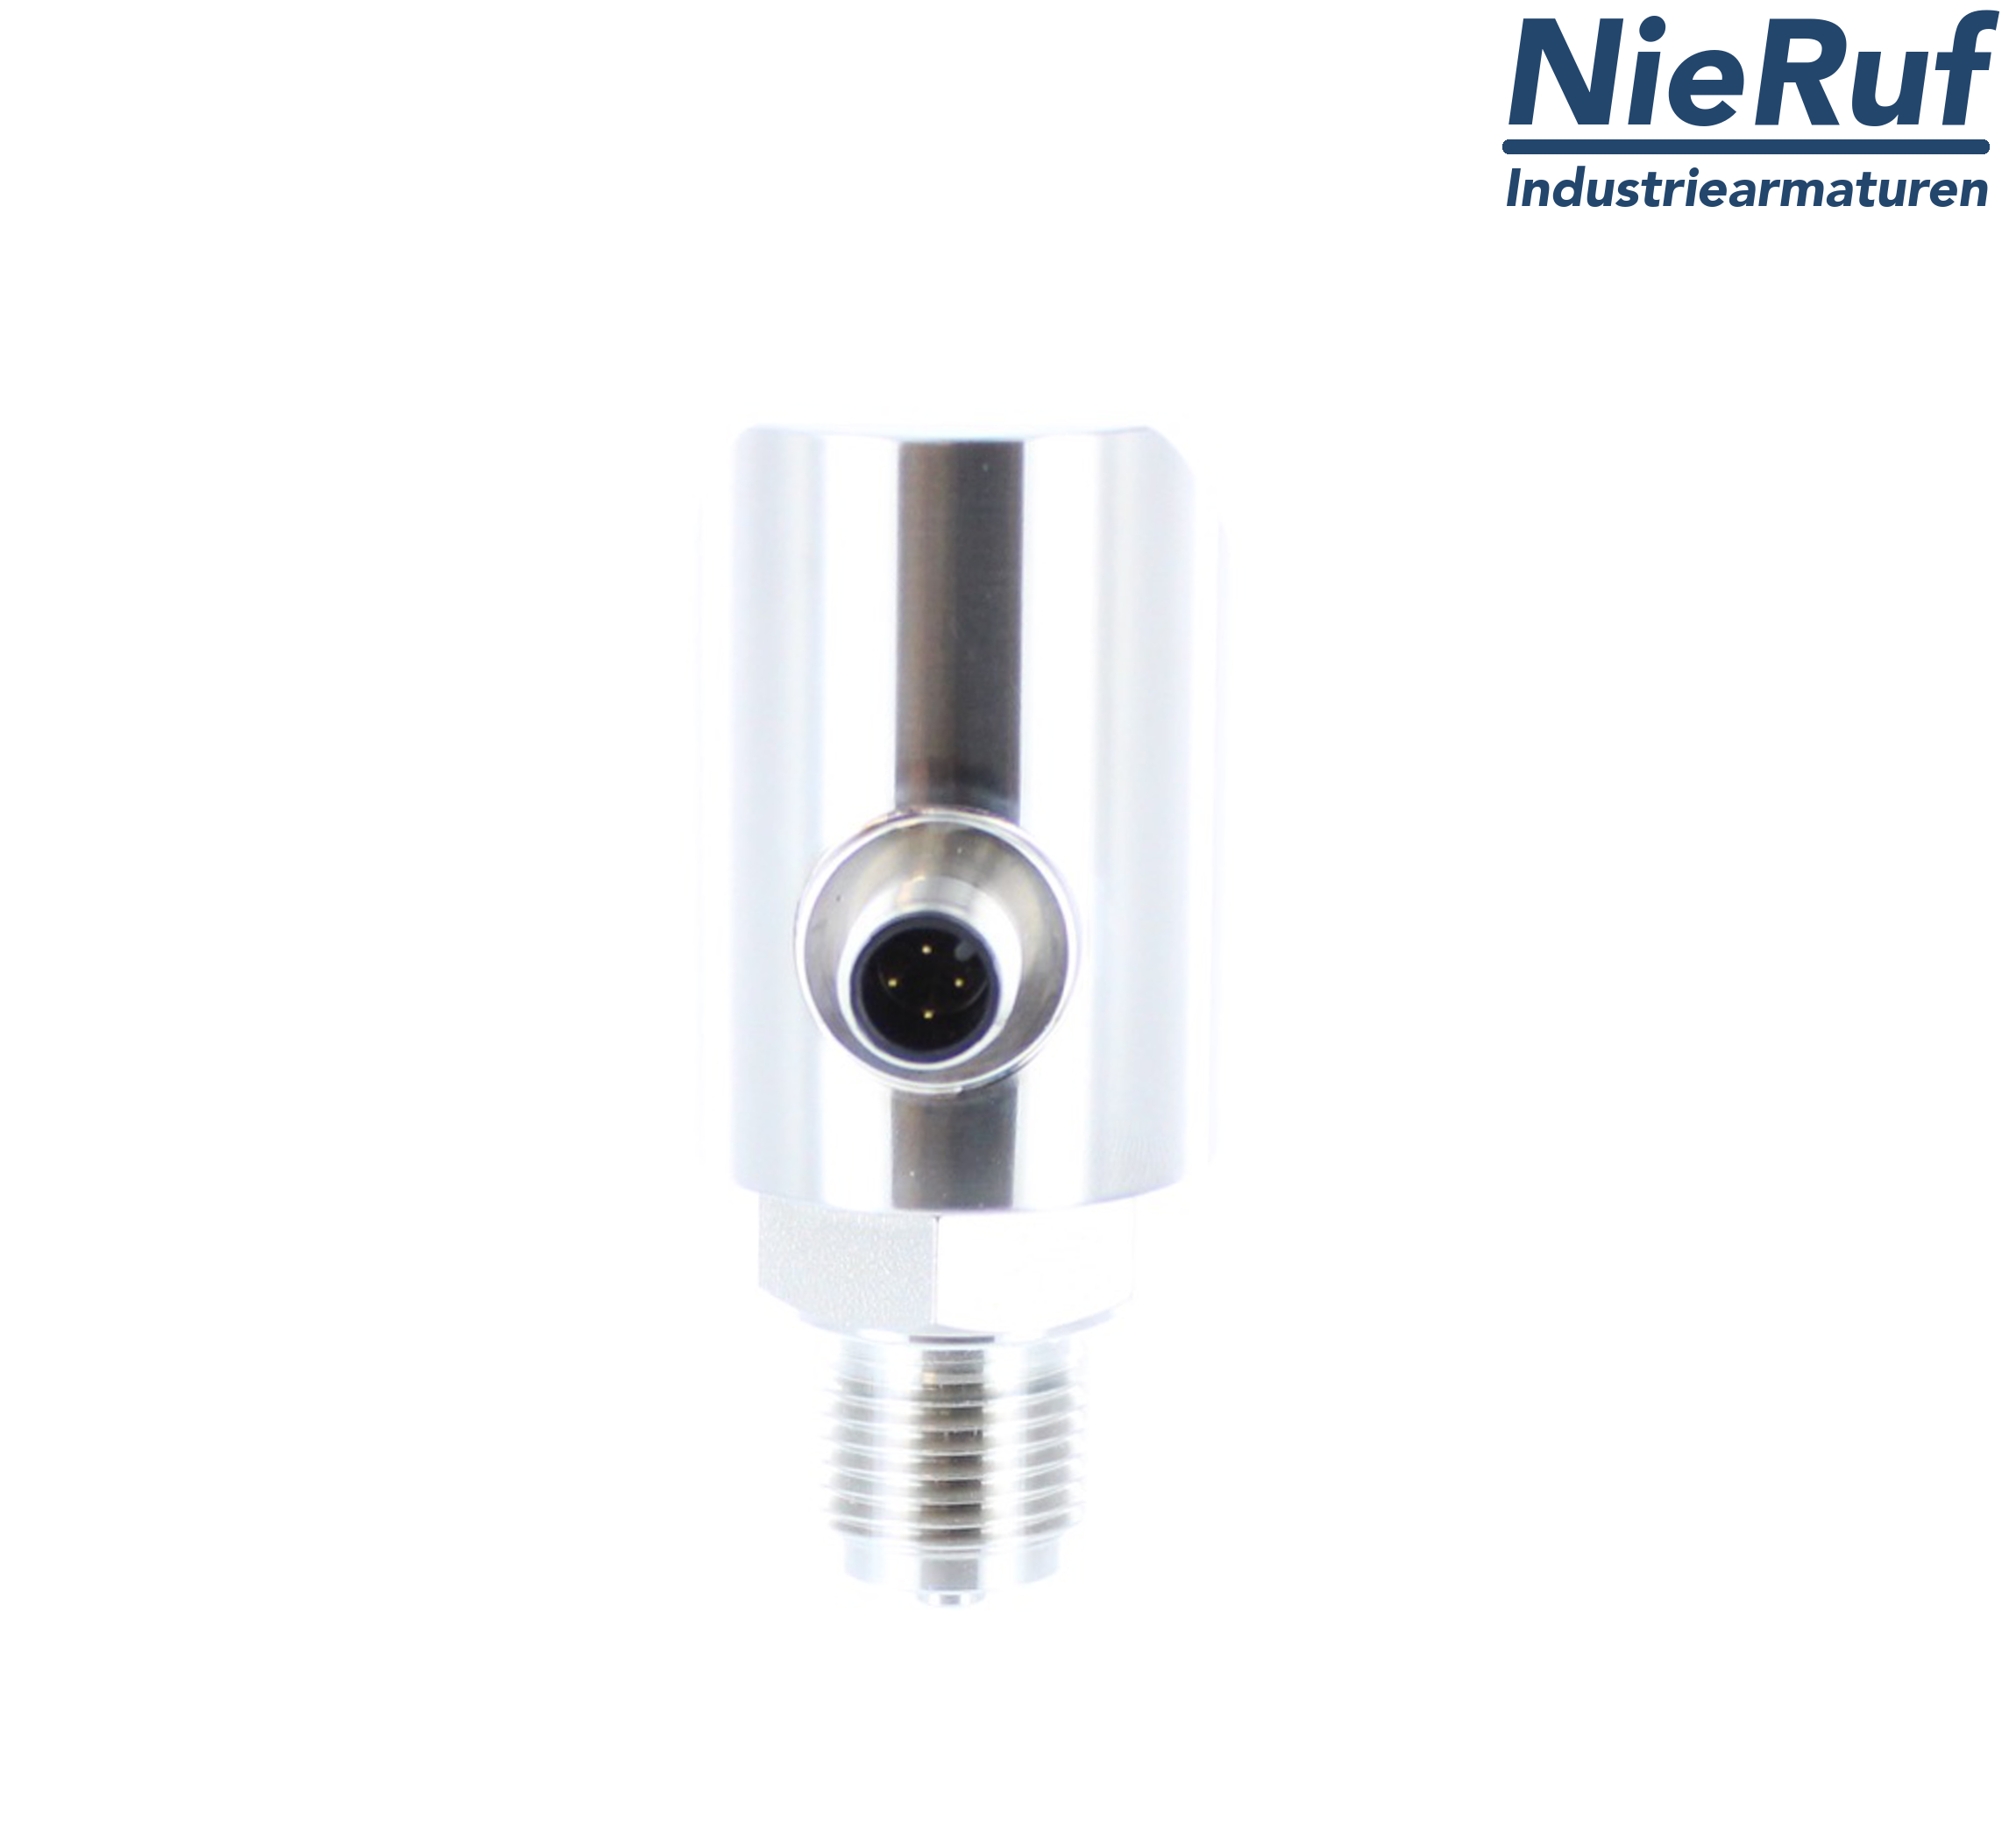 digital pressure sensor G 1/4" B 4-wire: 1xPNP, 1x4 - 20mA, Desina FPM 0,0 - 4,0 bar